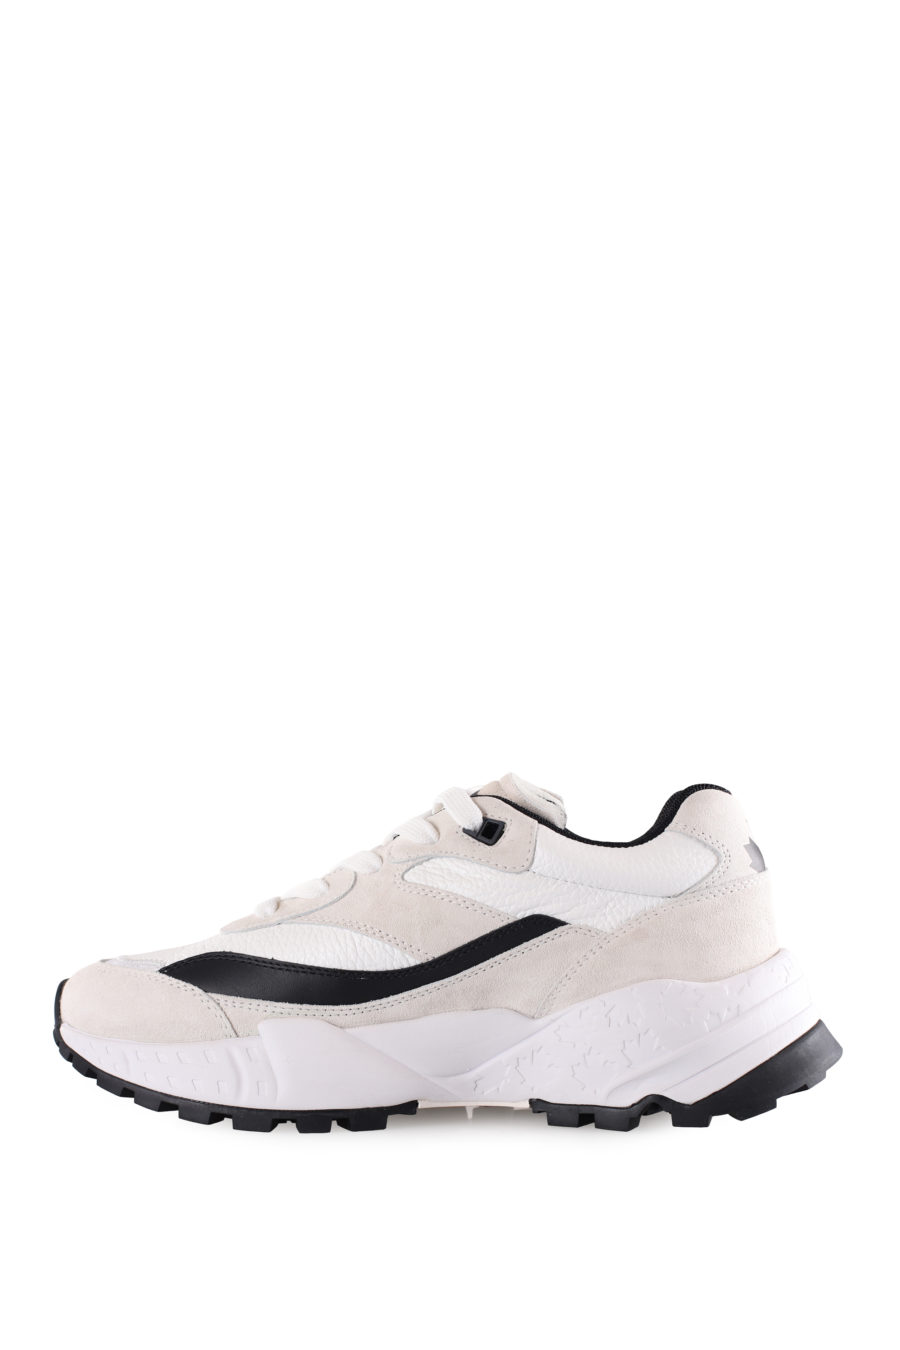 Zapatillas blancas con logo "Dsq2" y detalles negros - IMG 9501